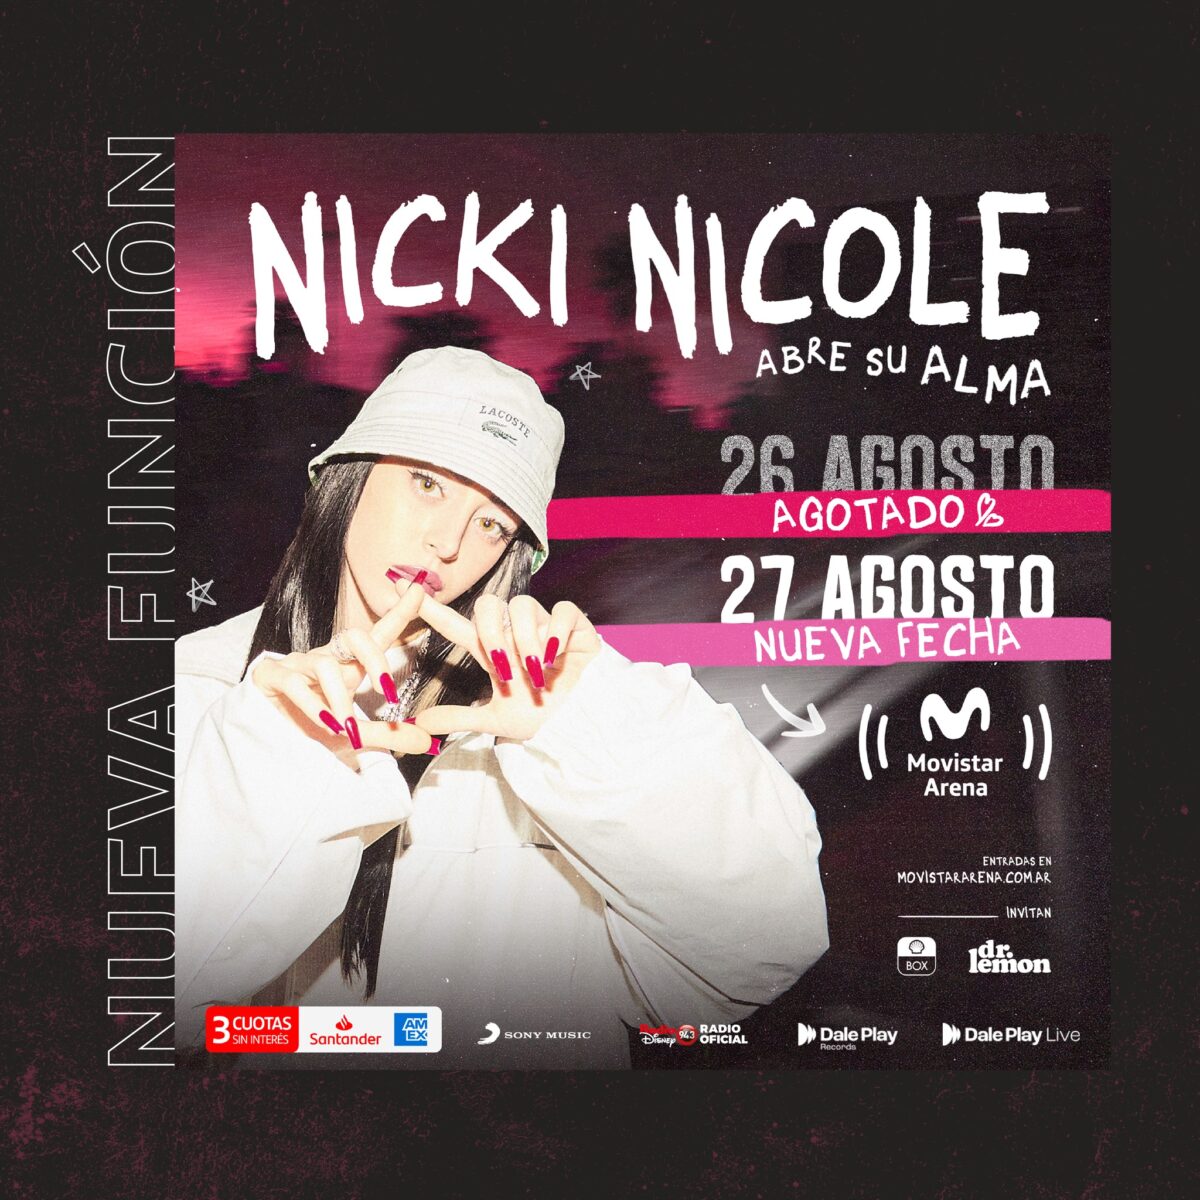 Nicki Nicole en vivo en Movistar Arena el 26 y 27 de agosto